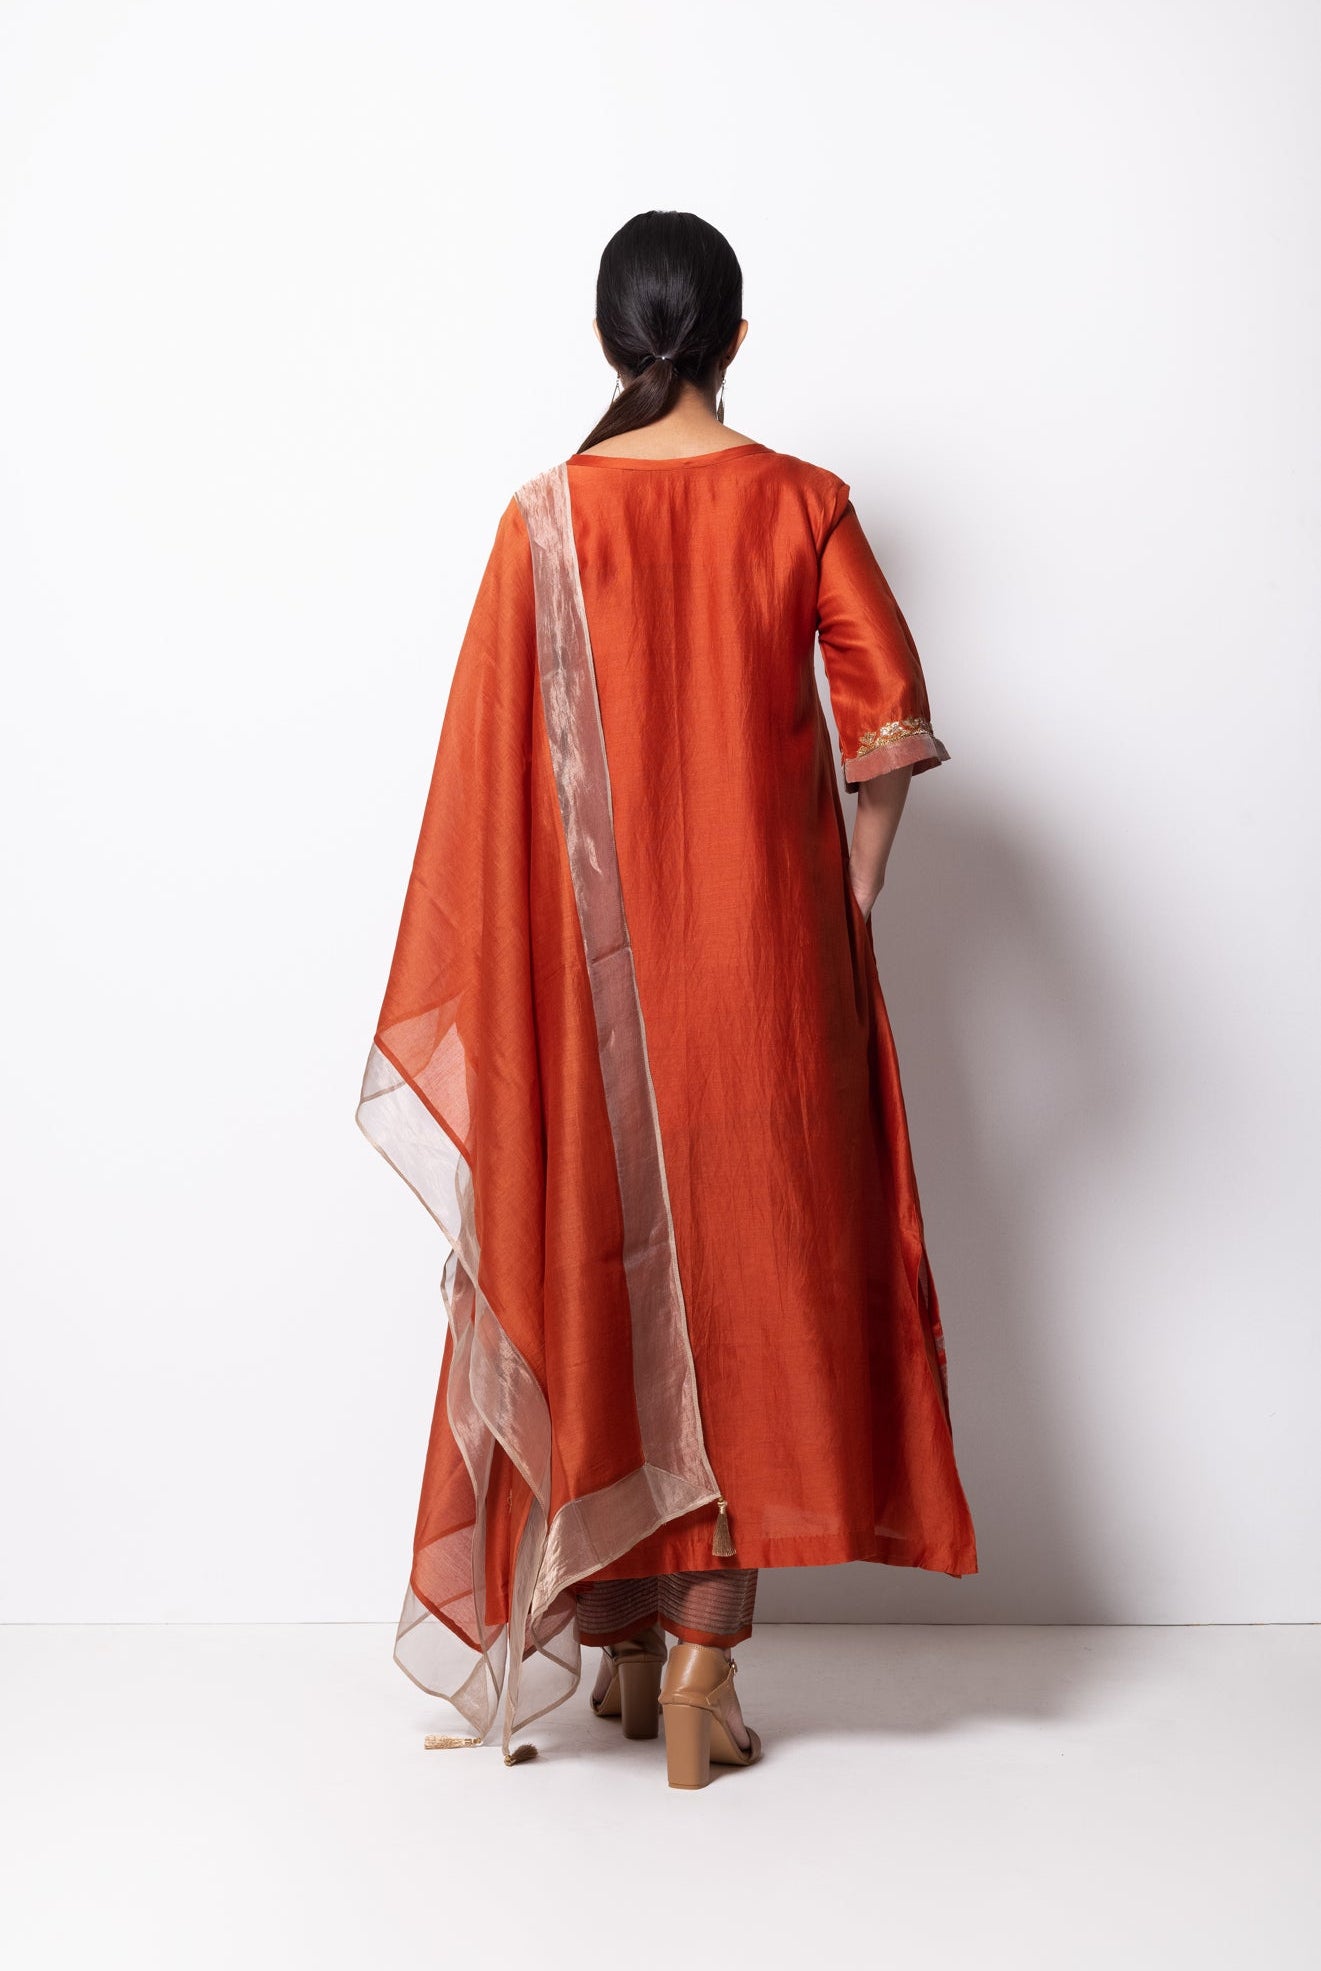 Rust Orange Chanderi Silk Kurta Set with Dupatta - CiceroniBhavik Shah